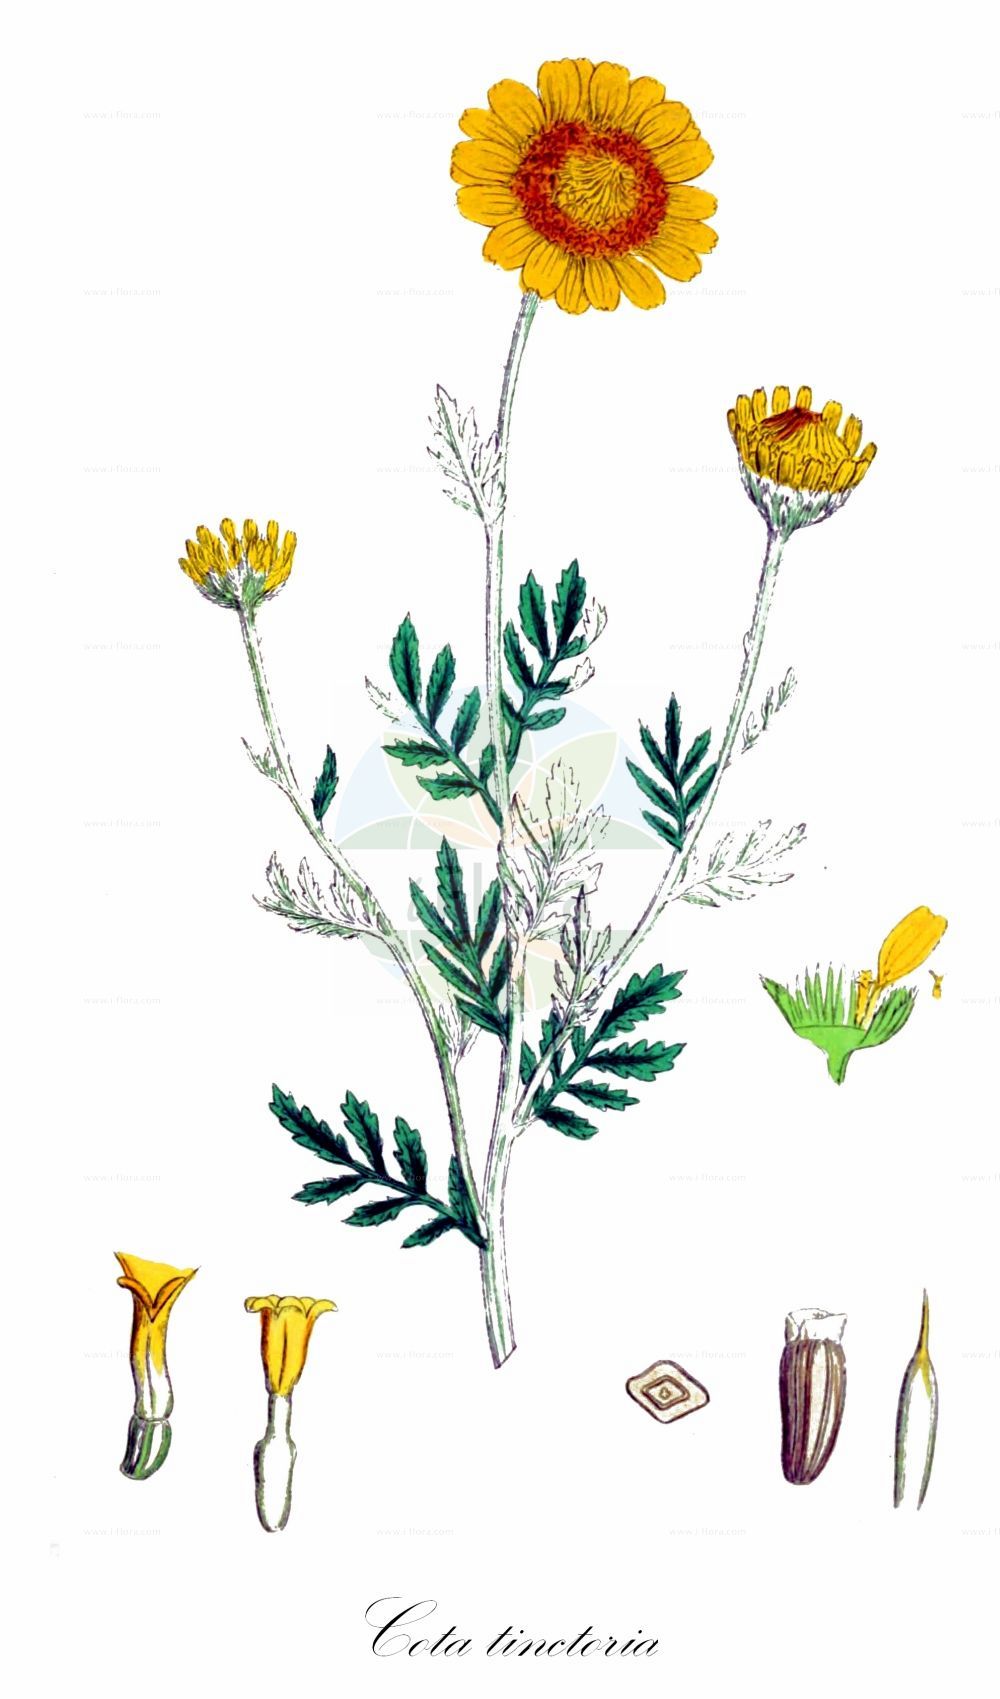 Historische Abbildung von Cota tinctoria (Färber-Hundskamille - Yellow Chamomile). Das Bild zeigt Blatt, Bluete, Frucht und Same. ---- Historical Drawing of Cota tinctoria (Färber-Hundskamille - Yellow Chamomile). The image is showing leaf, flower, fruit and seed.(Cota tinctoria,Färber-Hundskamille,Yellow Chamomile,Anthemis brachyglossa,Anthemis debilis,Anthemis discoidea,Anthemis maris-nigri,Anthemis markhotensis,Anthemis subtinctoria,Anthemis tinctoria,Anthemis zephyrovii,Chamaemelum discoideum,Cota tinctoria,Cota tinctoria subsp. subtinctoria,Faerber-Hundskamille,Yellow Chamomile,Dyer's Chamomile,Golden Chamomile,Cota,Asteraceae,Korbblütengewächse,Daisy family,Blatt,Bluete,Frucht,Same,leaf,flower,fruit,seed,Sowerby (1790-1813))